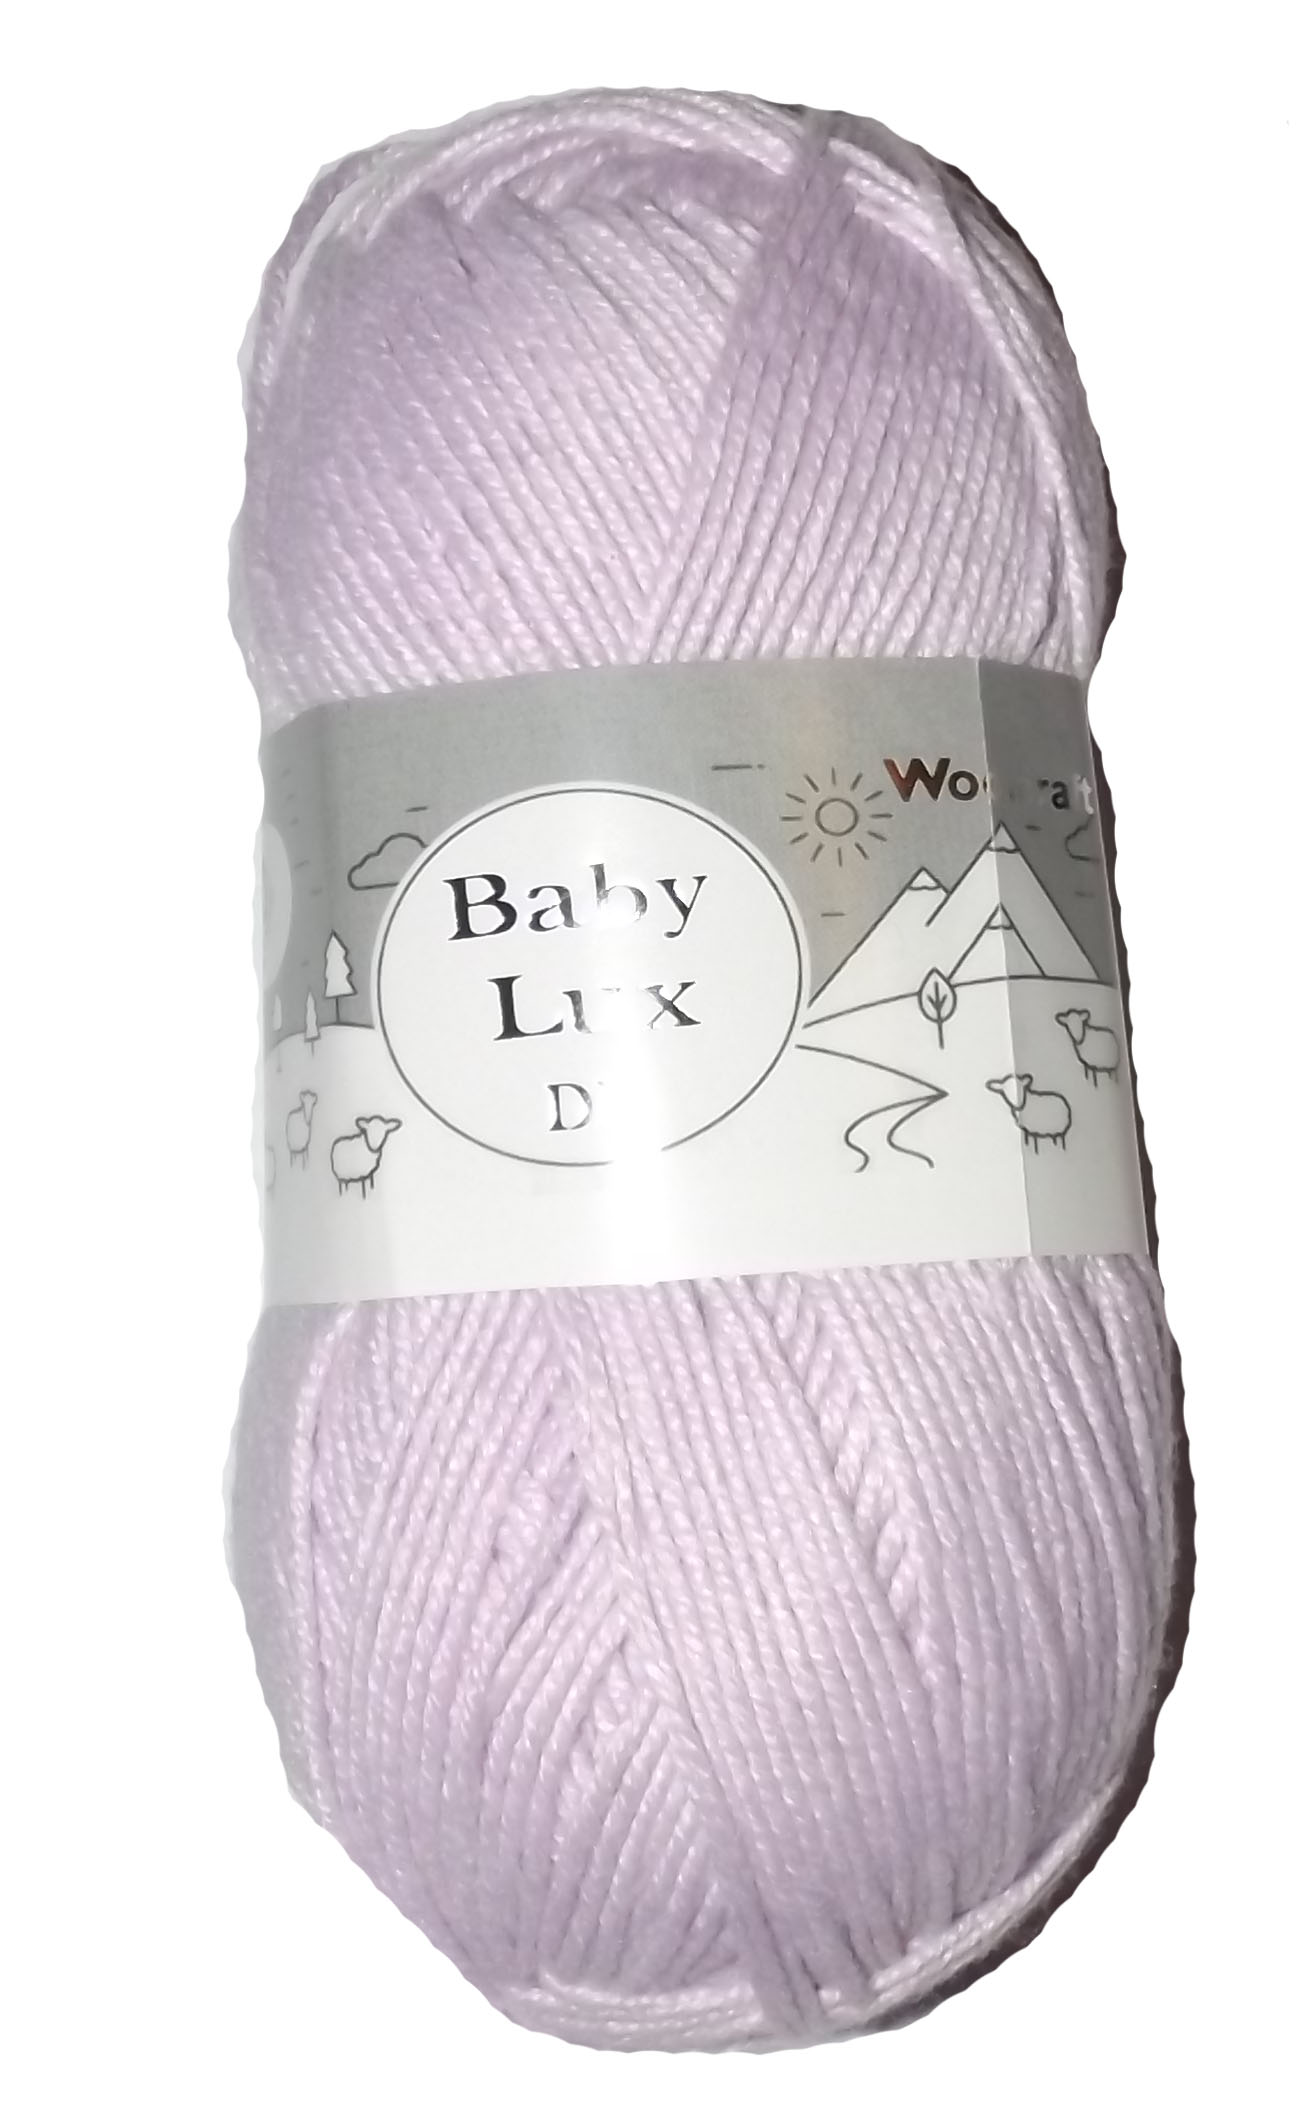 Baby Lux DK Yarn 100g Ball Lilac